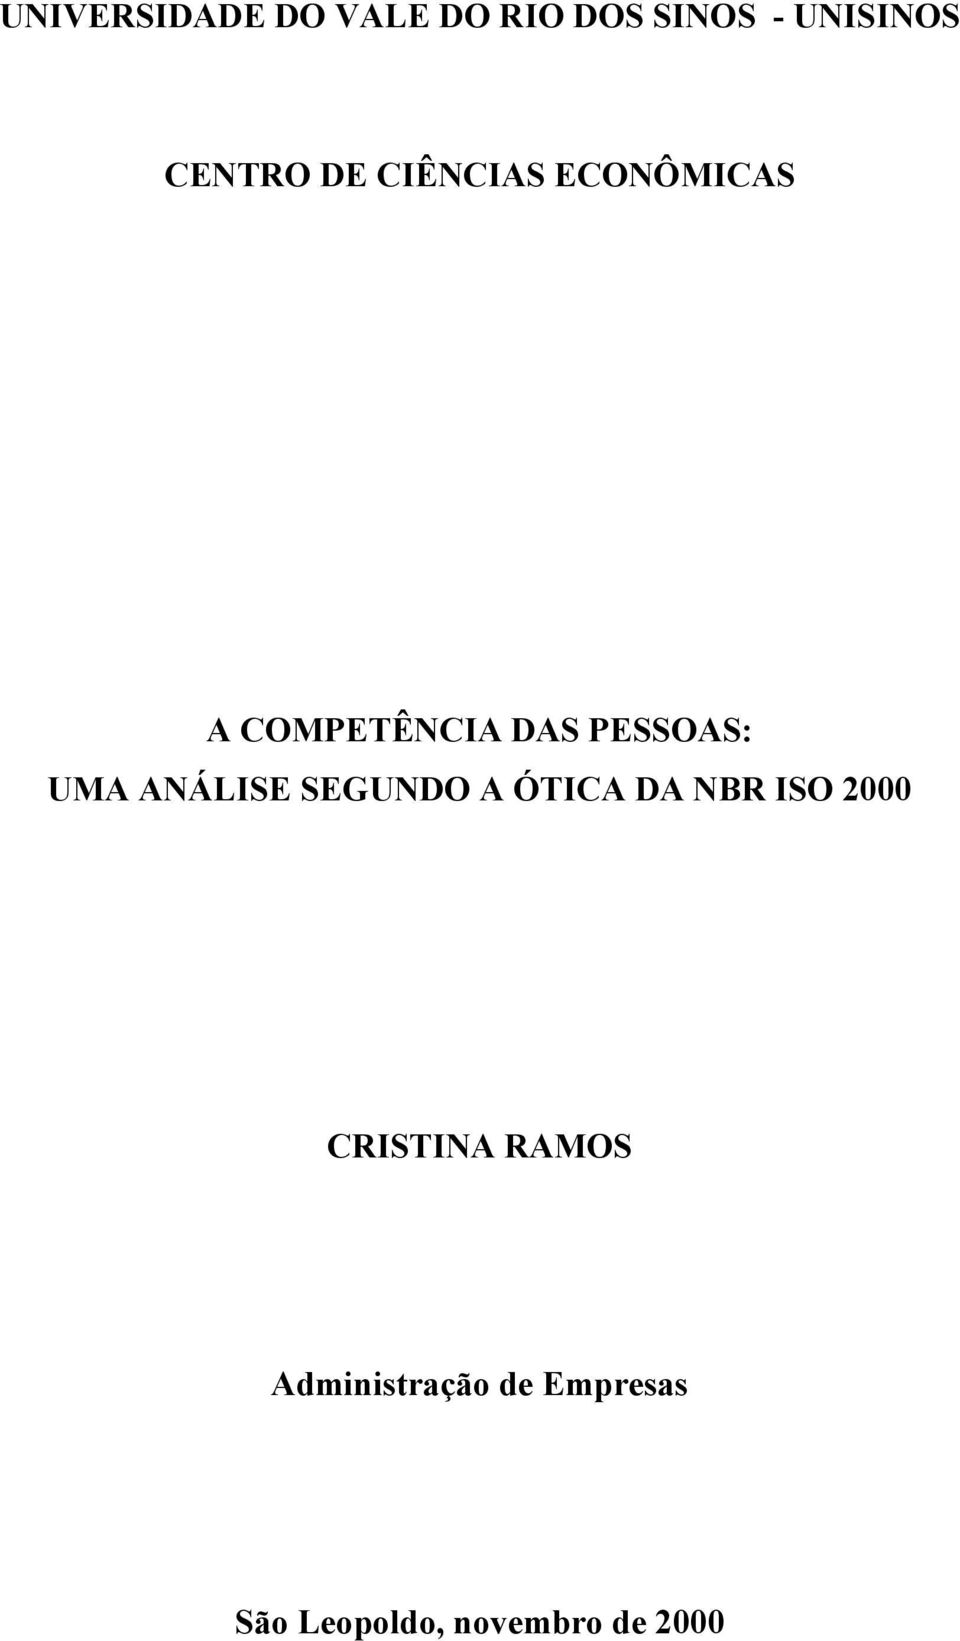 ANÁLISE SEGUNDO A ÓTICA DA NBR ISO 2000 CRISTINA RAMOS